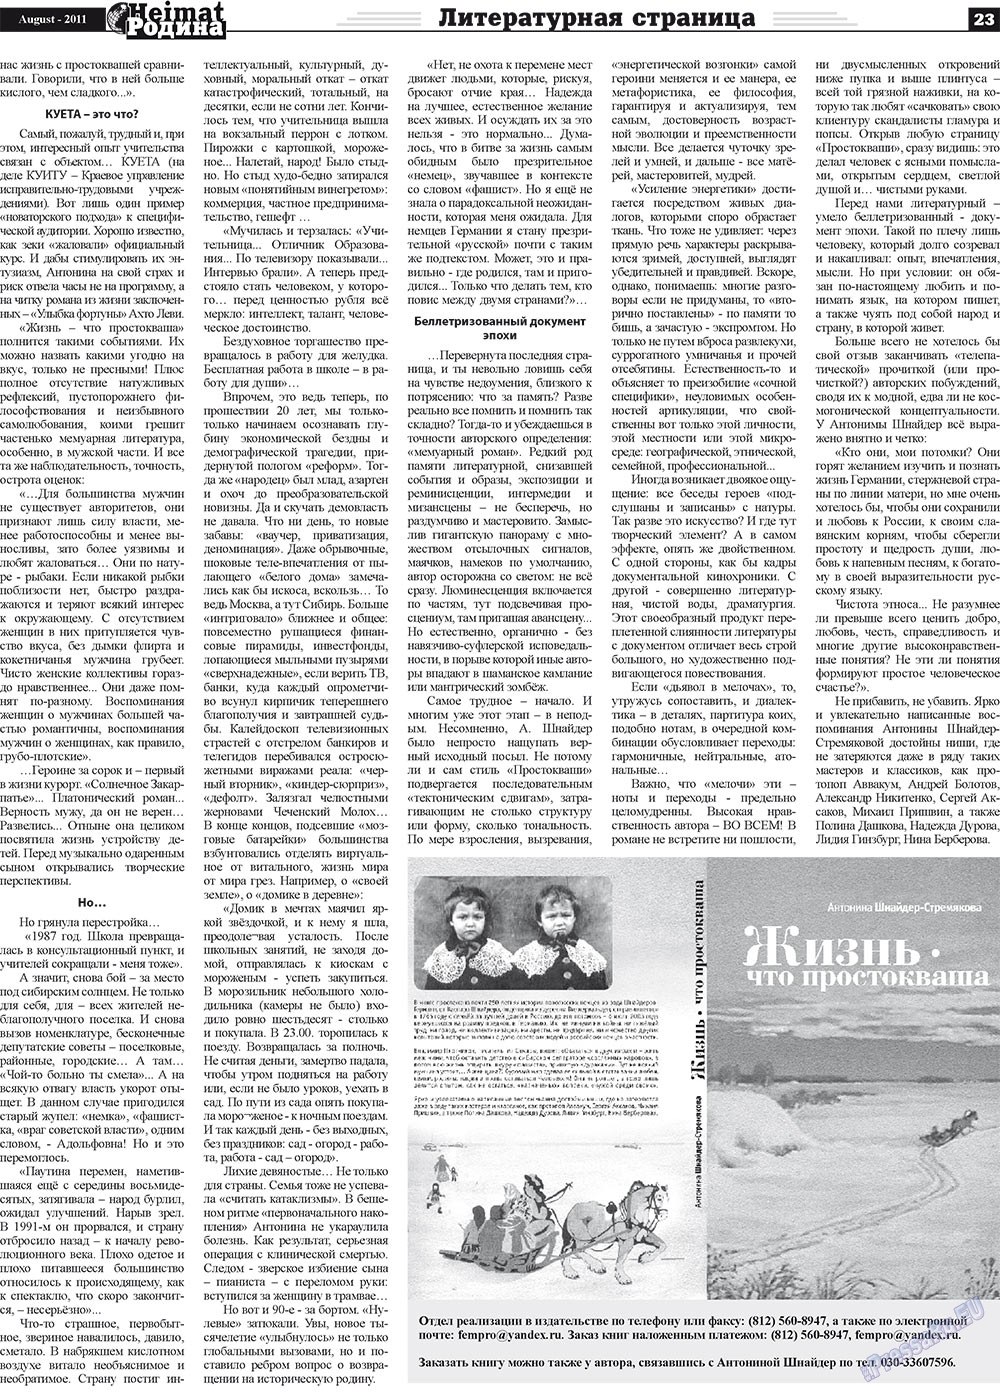 Heimat-Родина (газета). 2011 год, номер 8, стр. 23